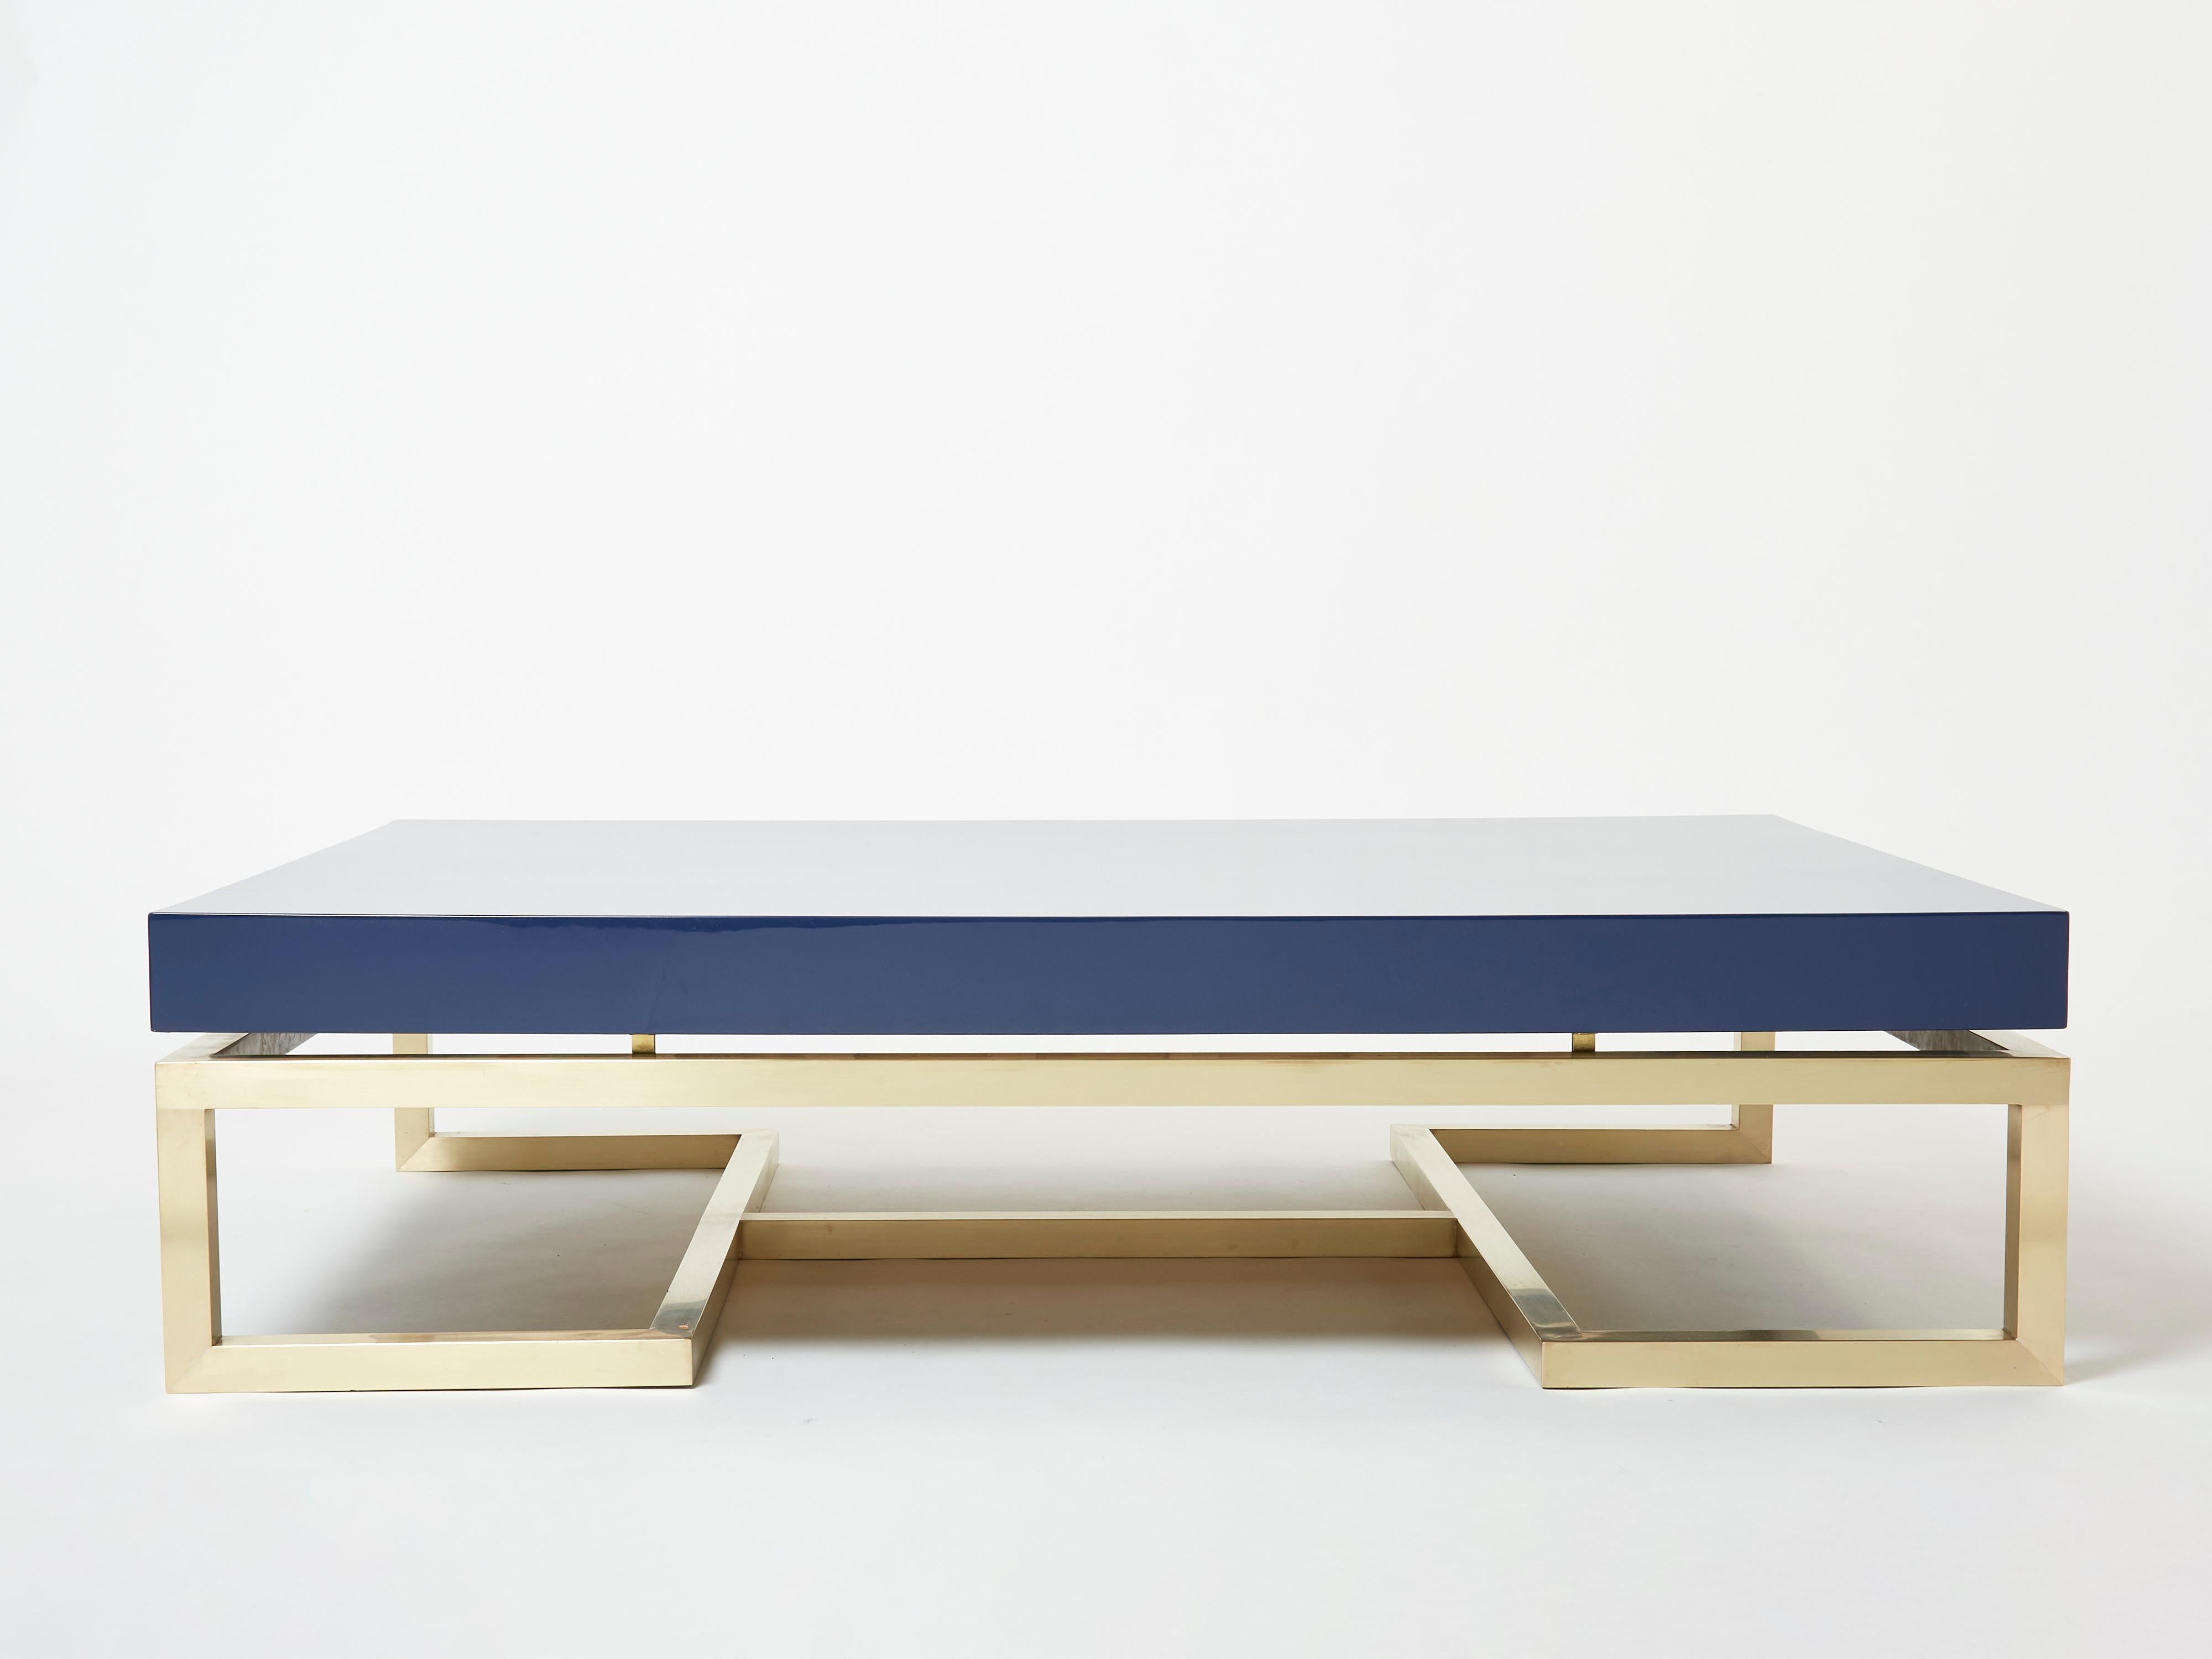 Conçue par Guy Lefevre pour la Maison Jansen à la fin des années 1970, cette magnifique table basse est dotée de solides pieds en laiton soyeux et d'un plateau laqué bleu océan foncé. Sa symétrie et sa conception architecturale forte se combinent